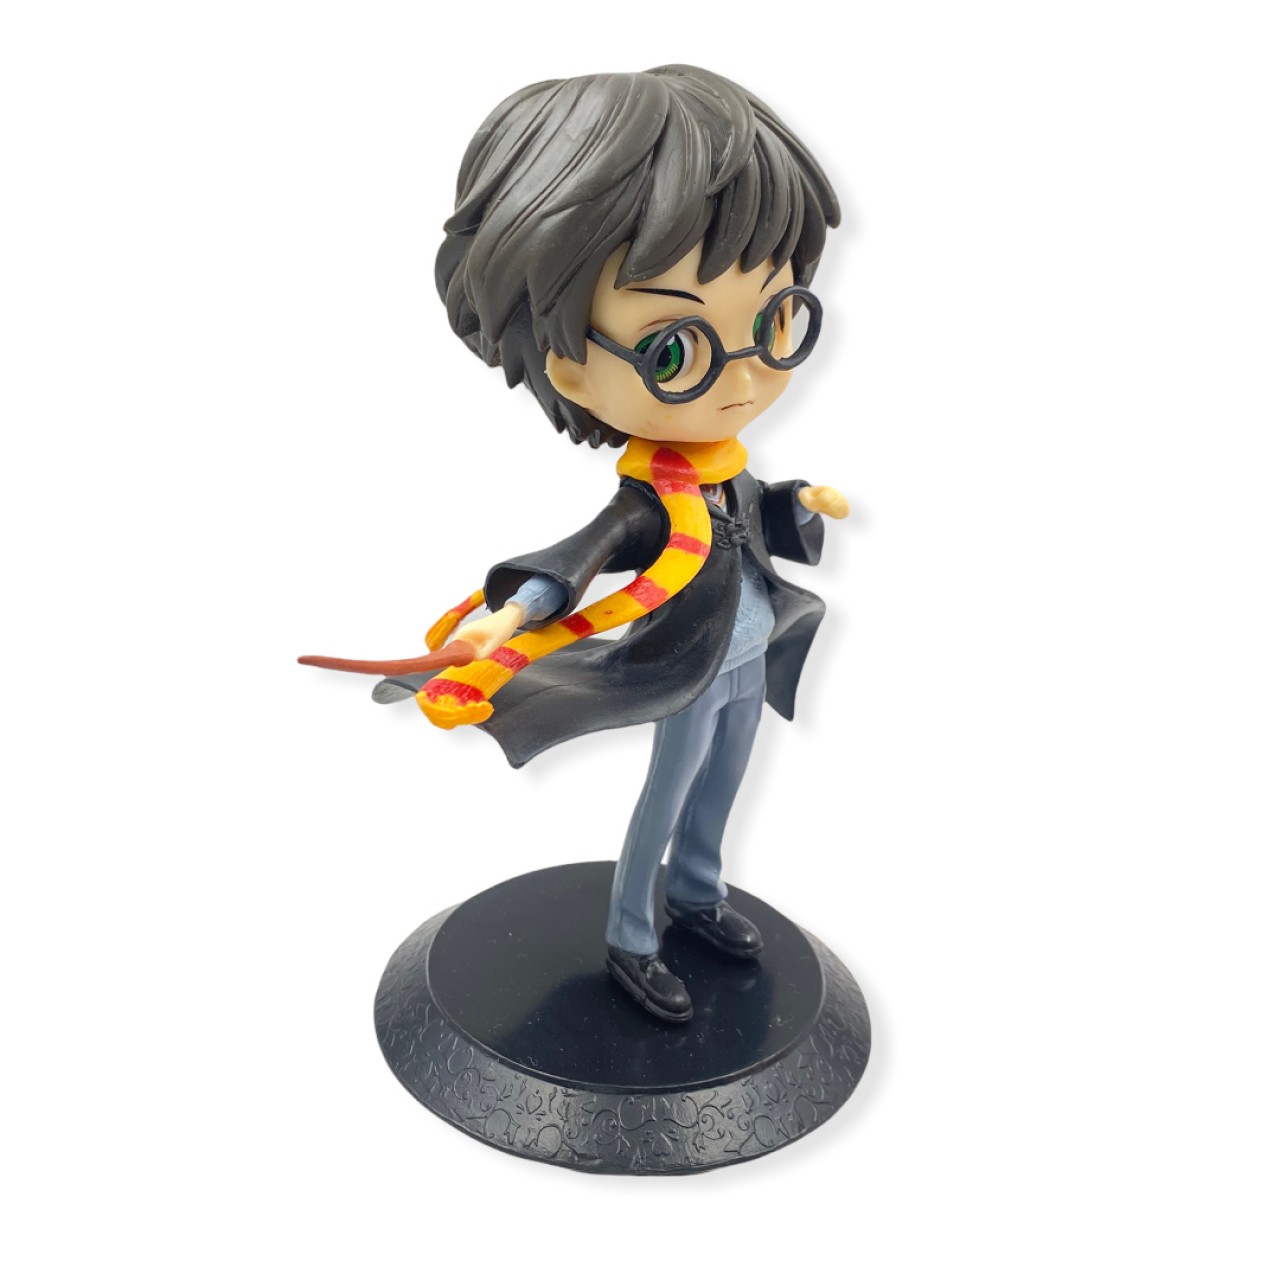 Harry Potter Decorative Action Figure